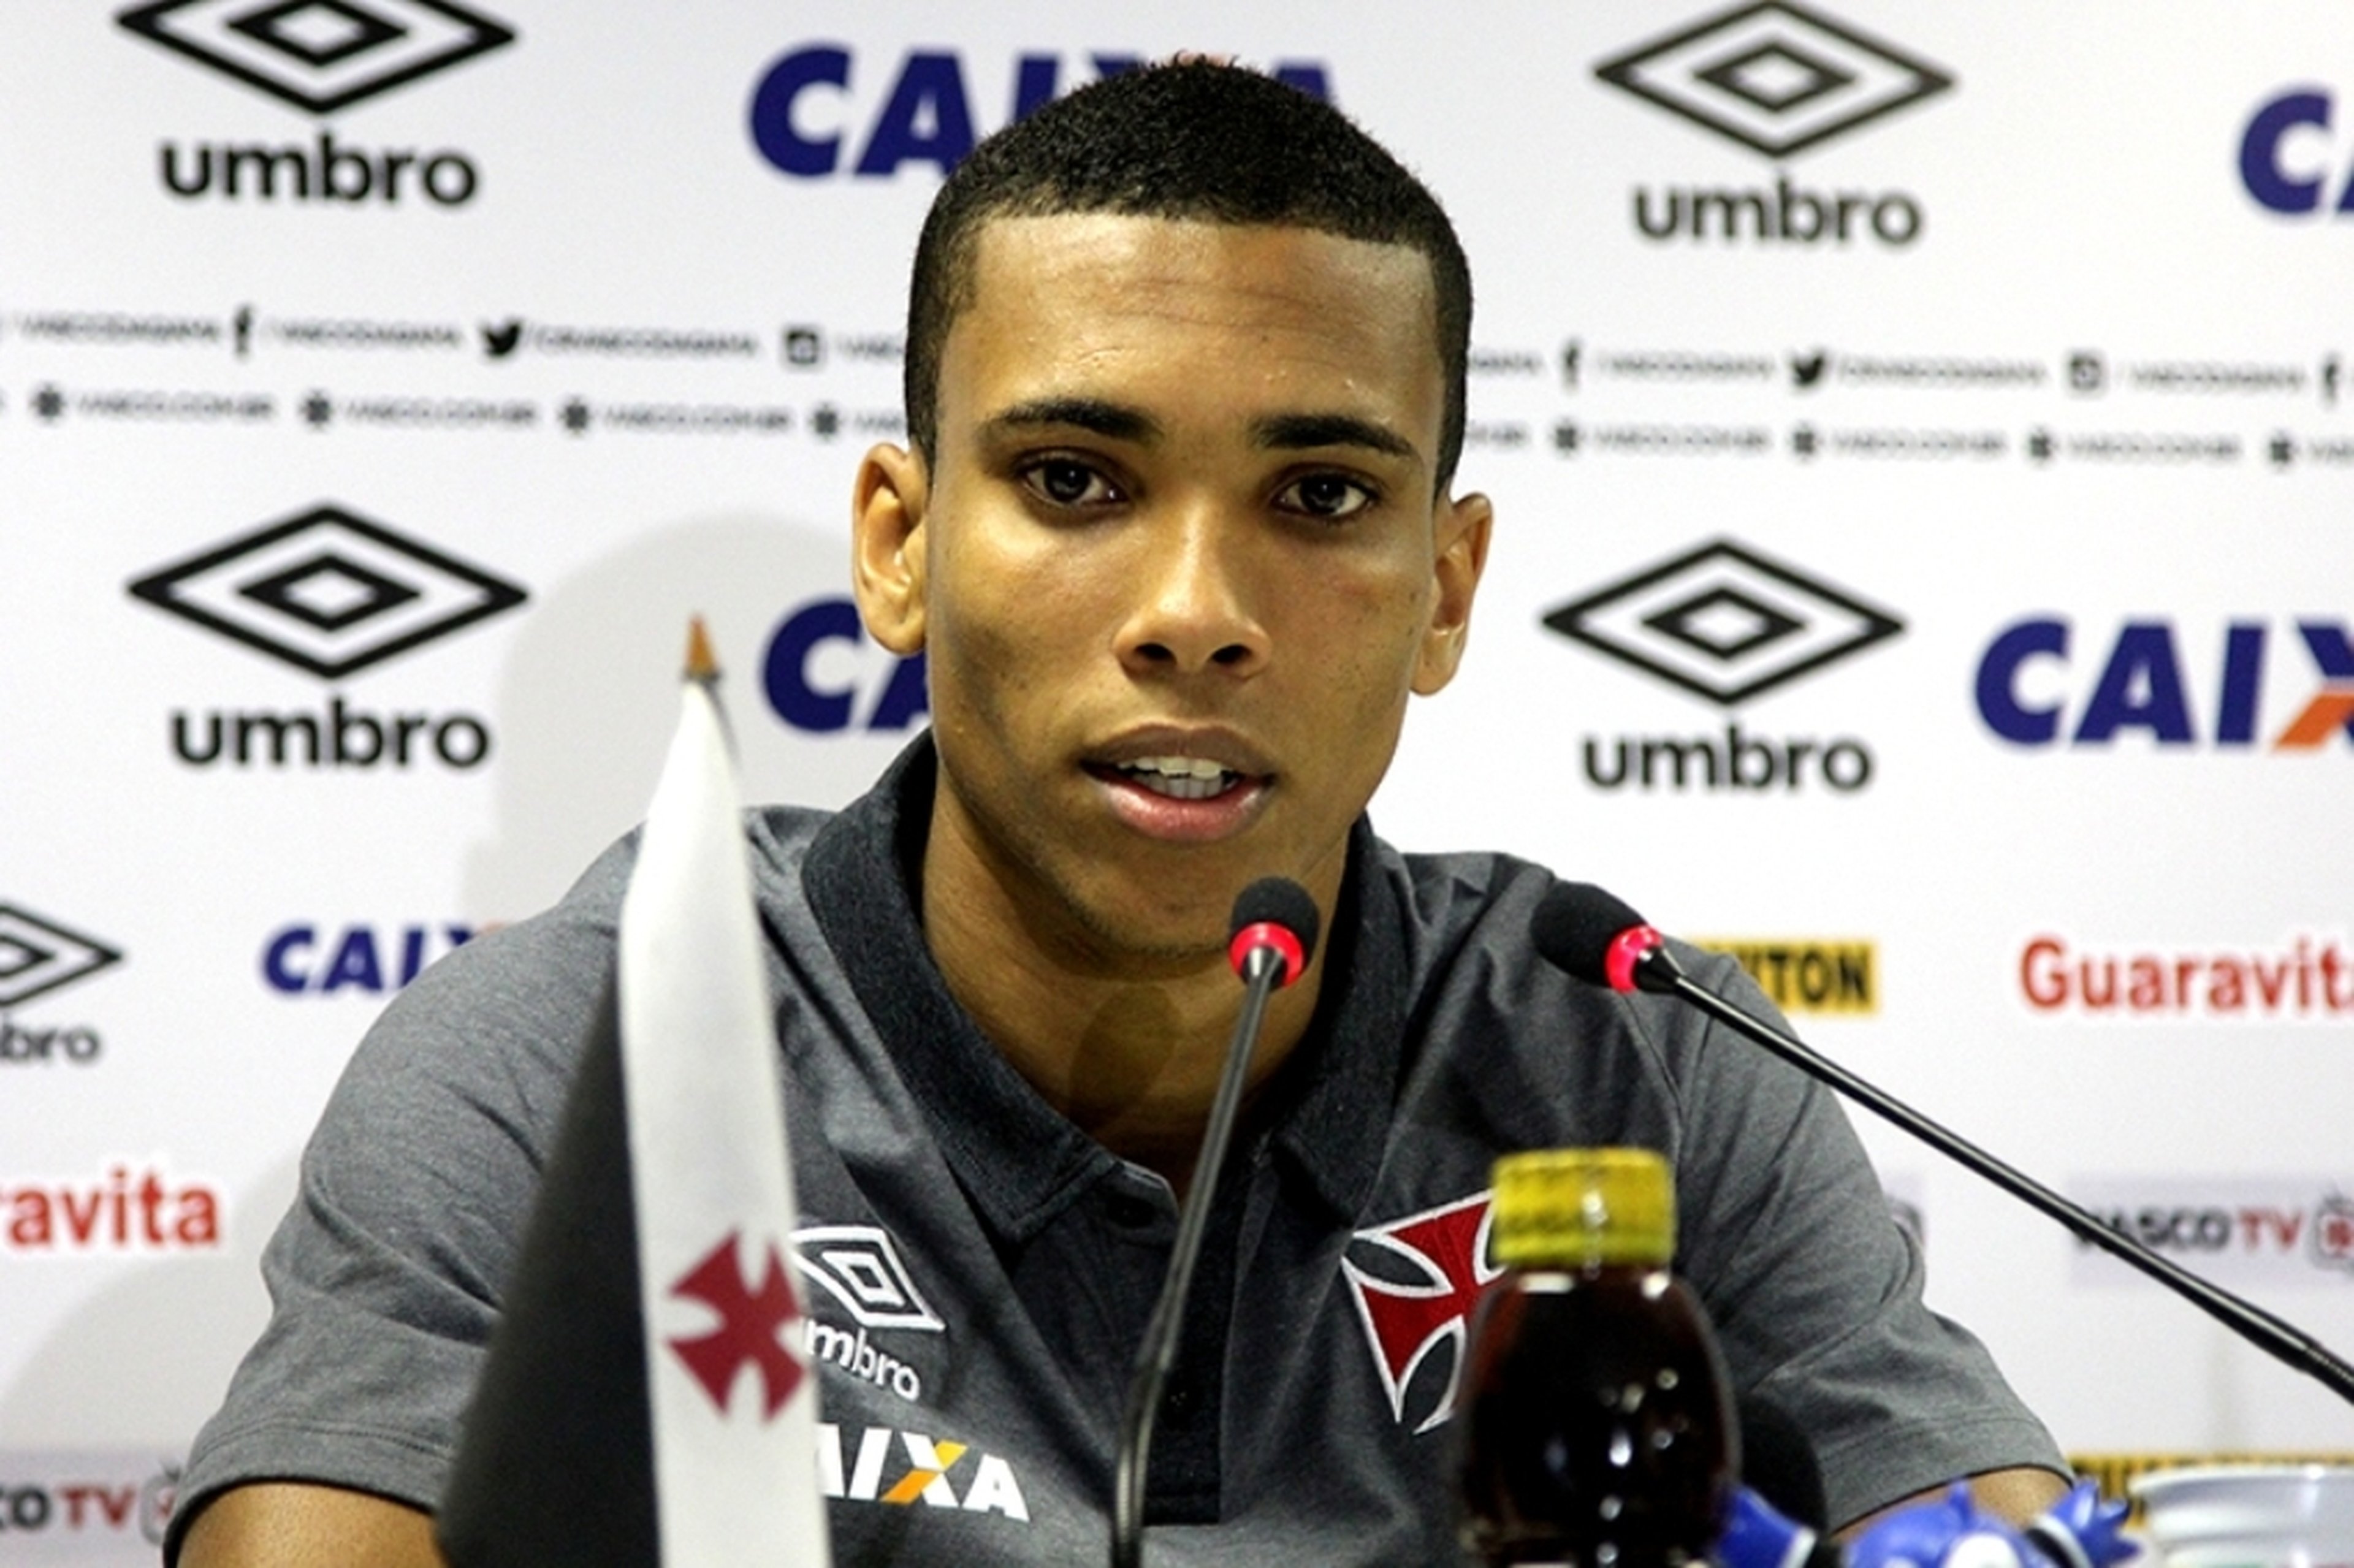  Paulo Fernandes/Divulgação Vasco